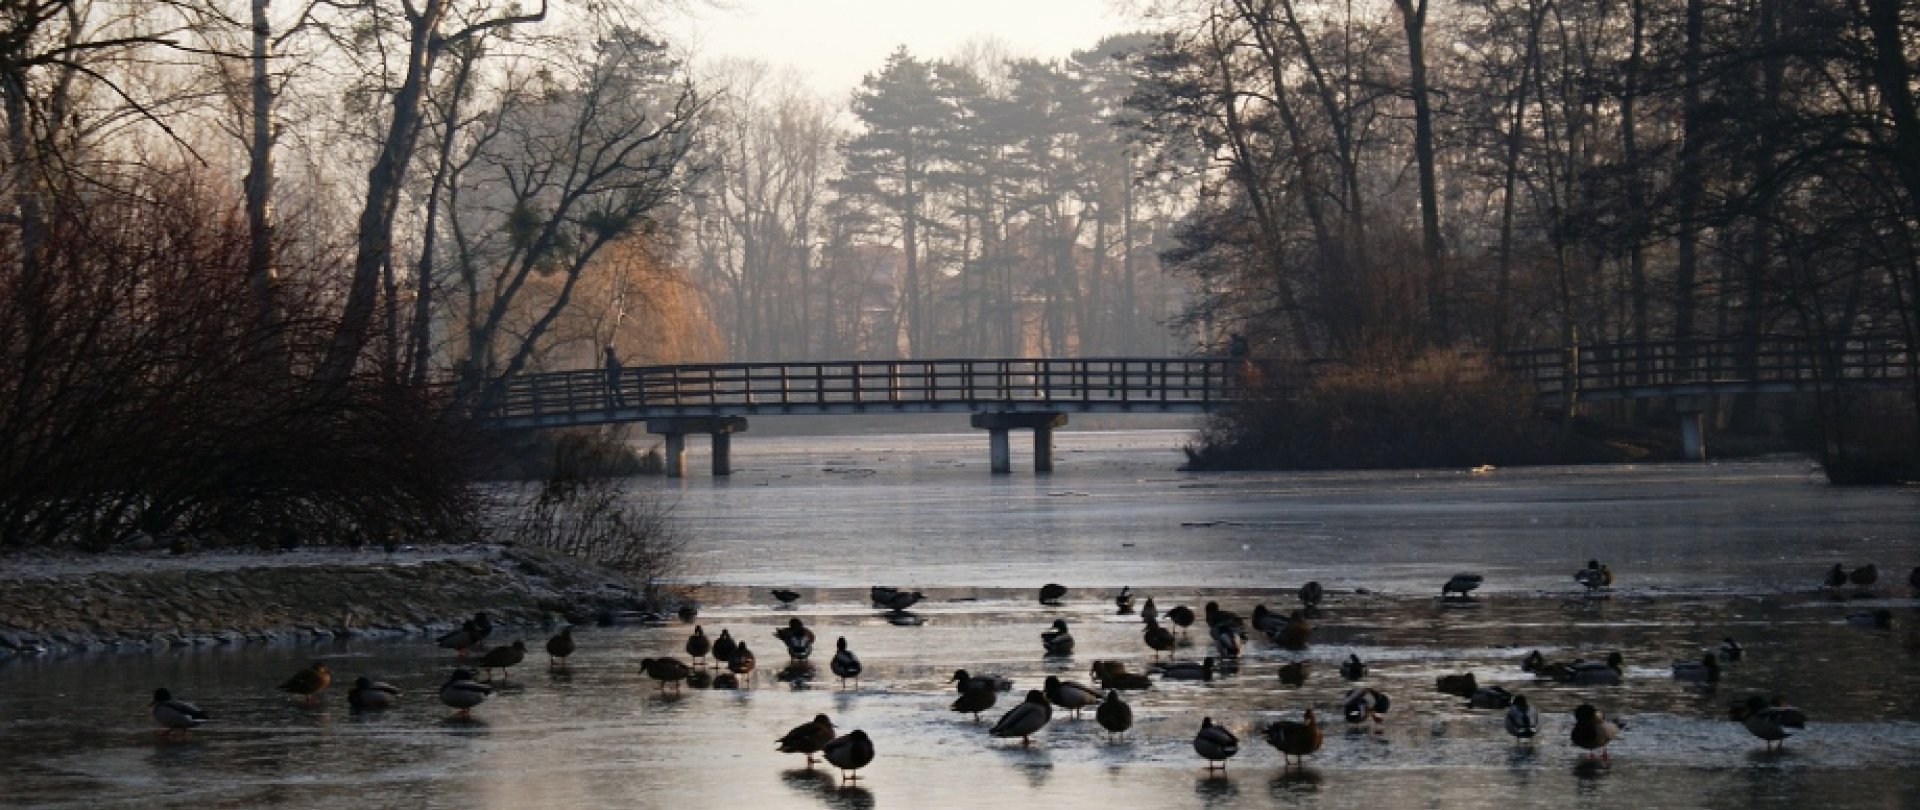 Parki w Poznaniu - wybieramy najpiękniejsze okoliczności przyrody